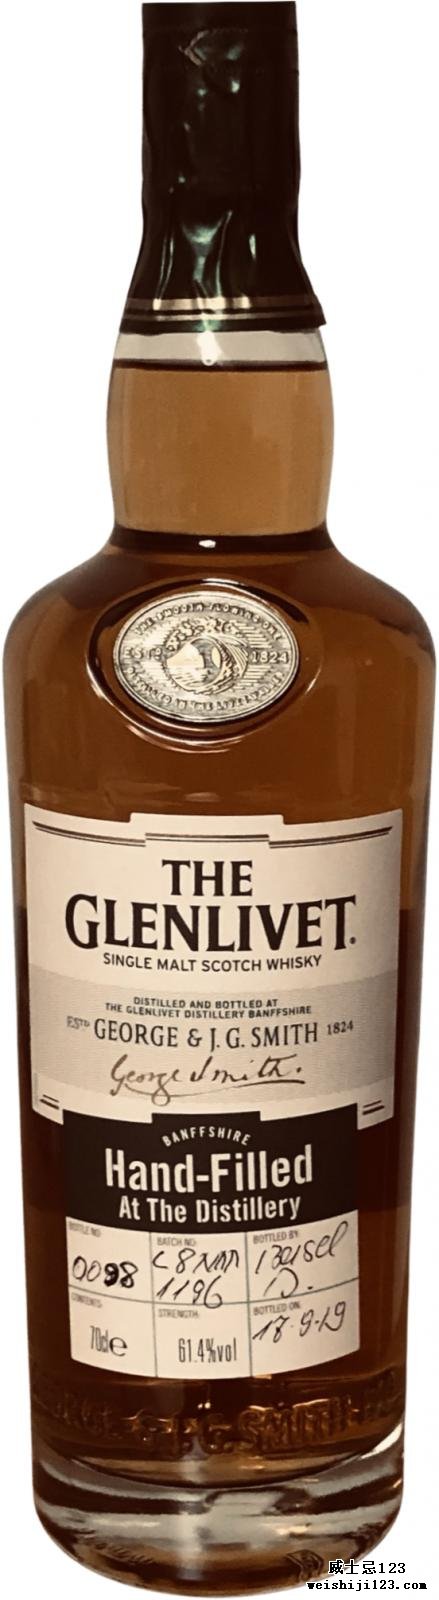 Glenlivet Hand-Filled at the Distillery